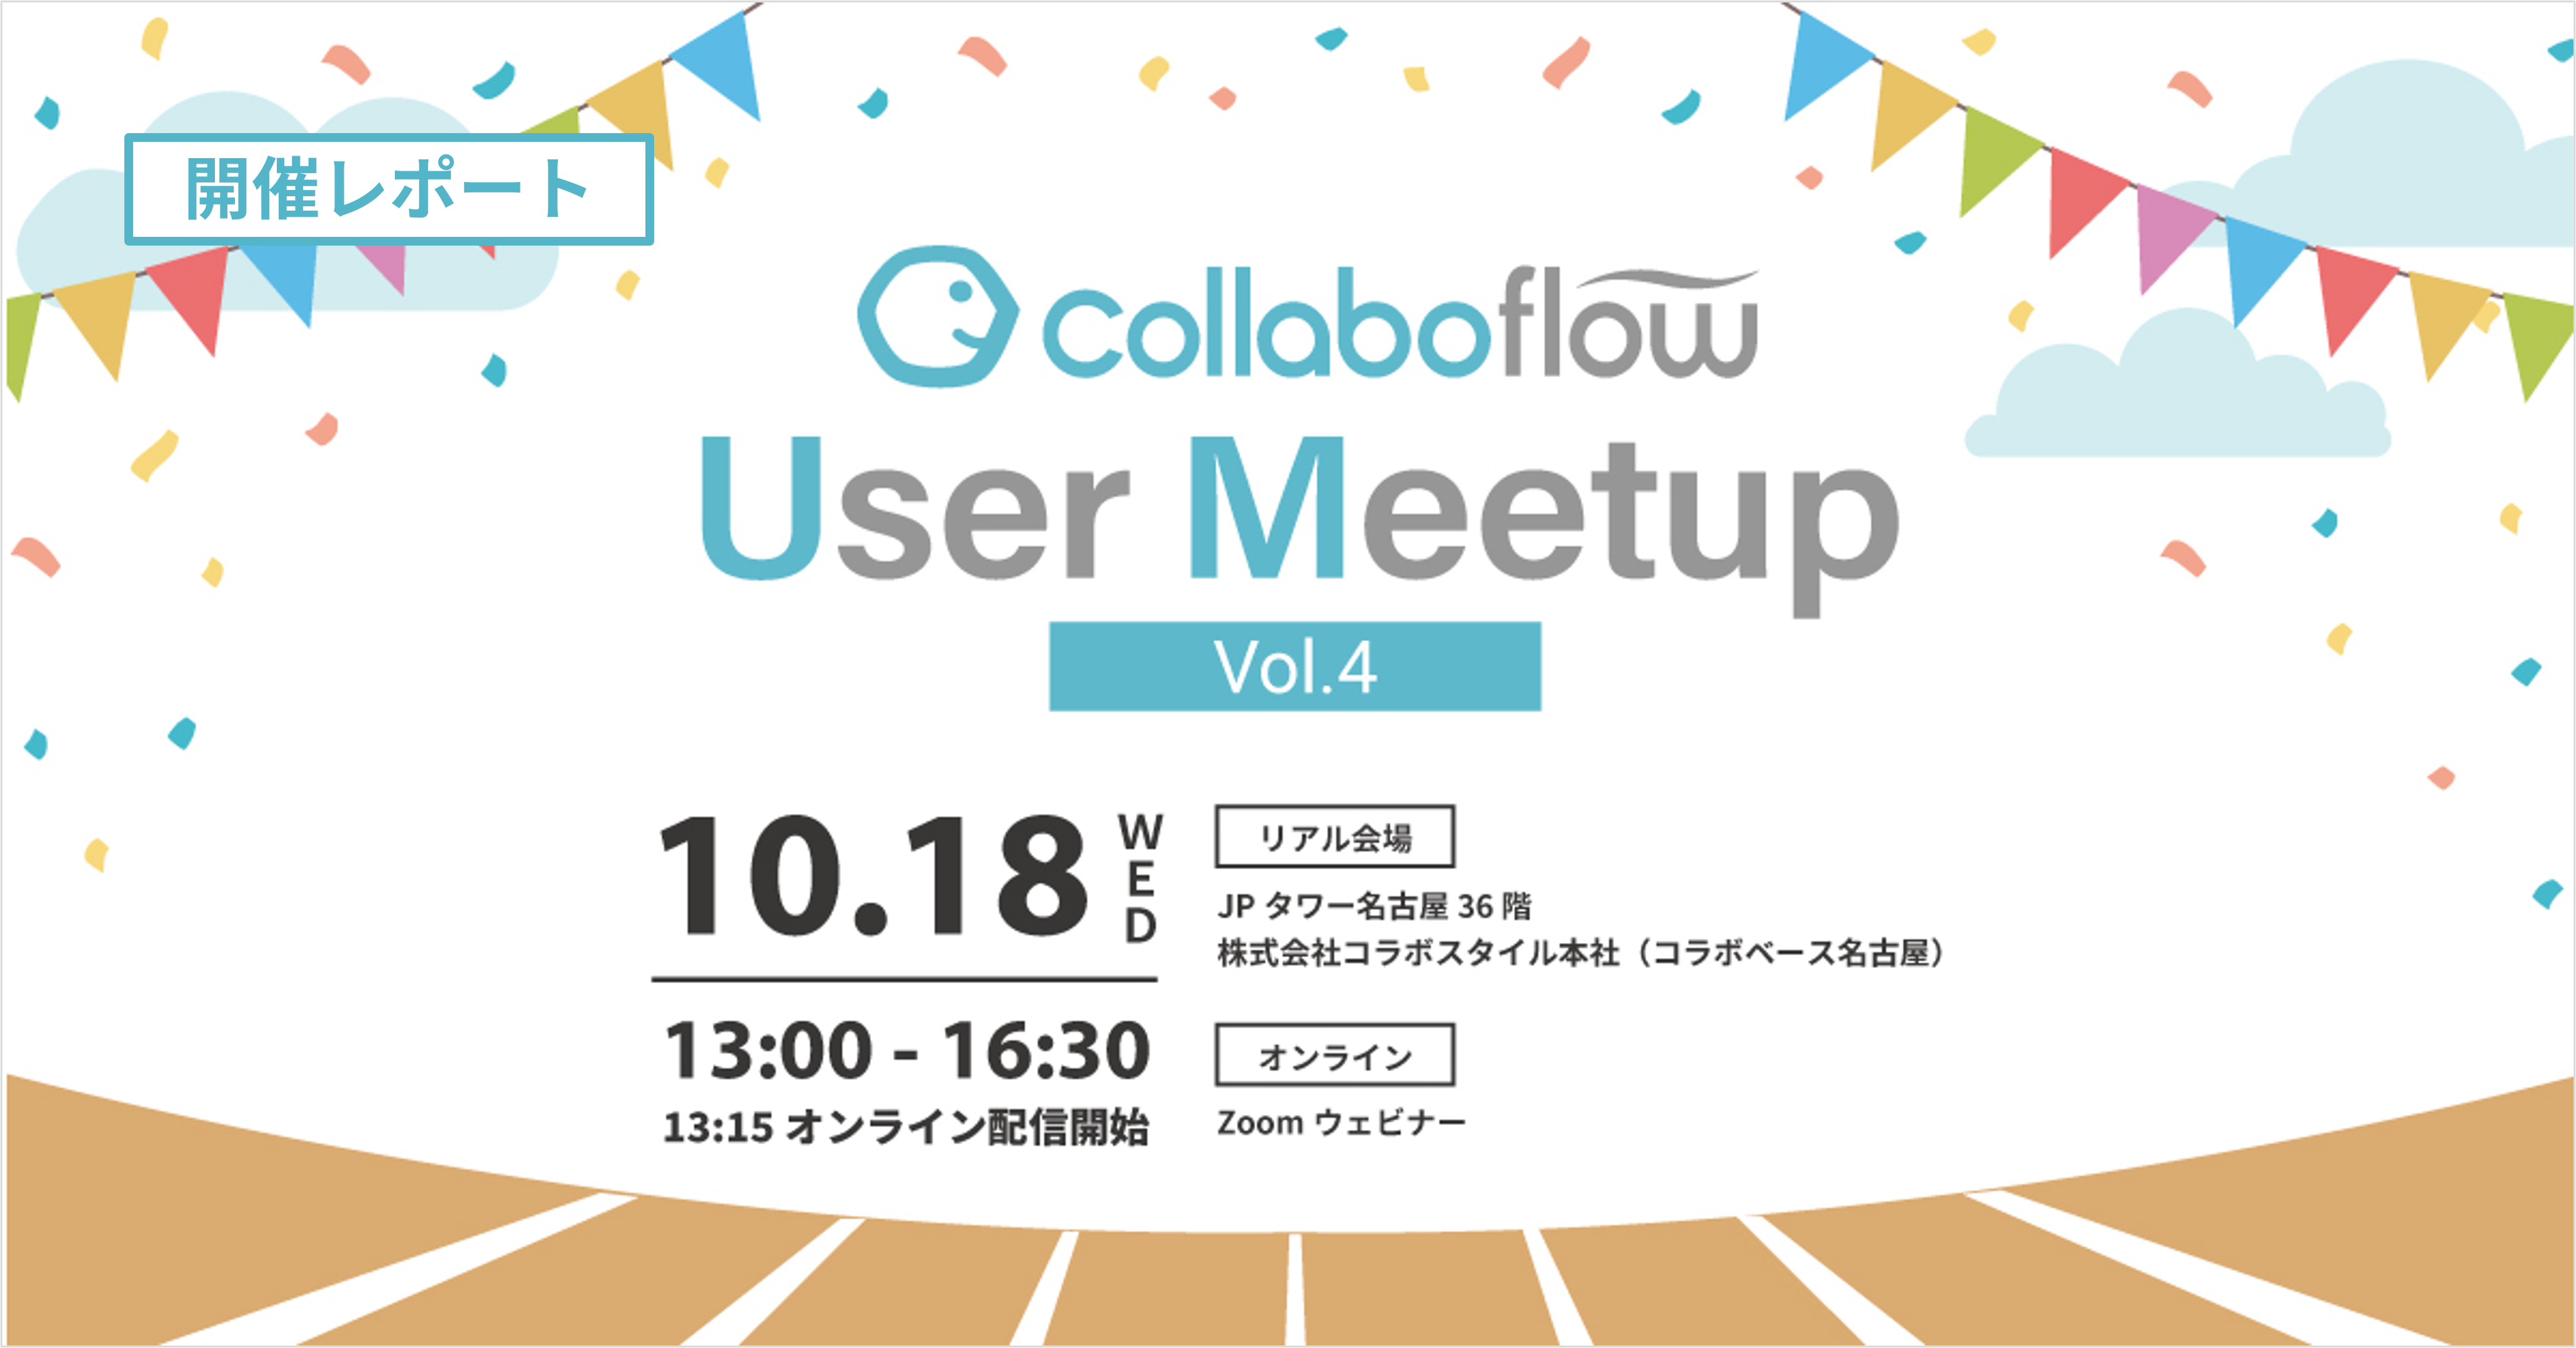 ユーザーイベント「Collaboflow User Meetup Vol.4」を開催しました！